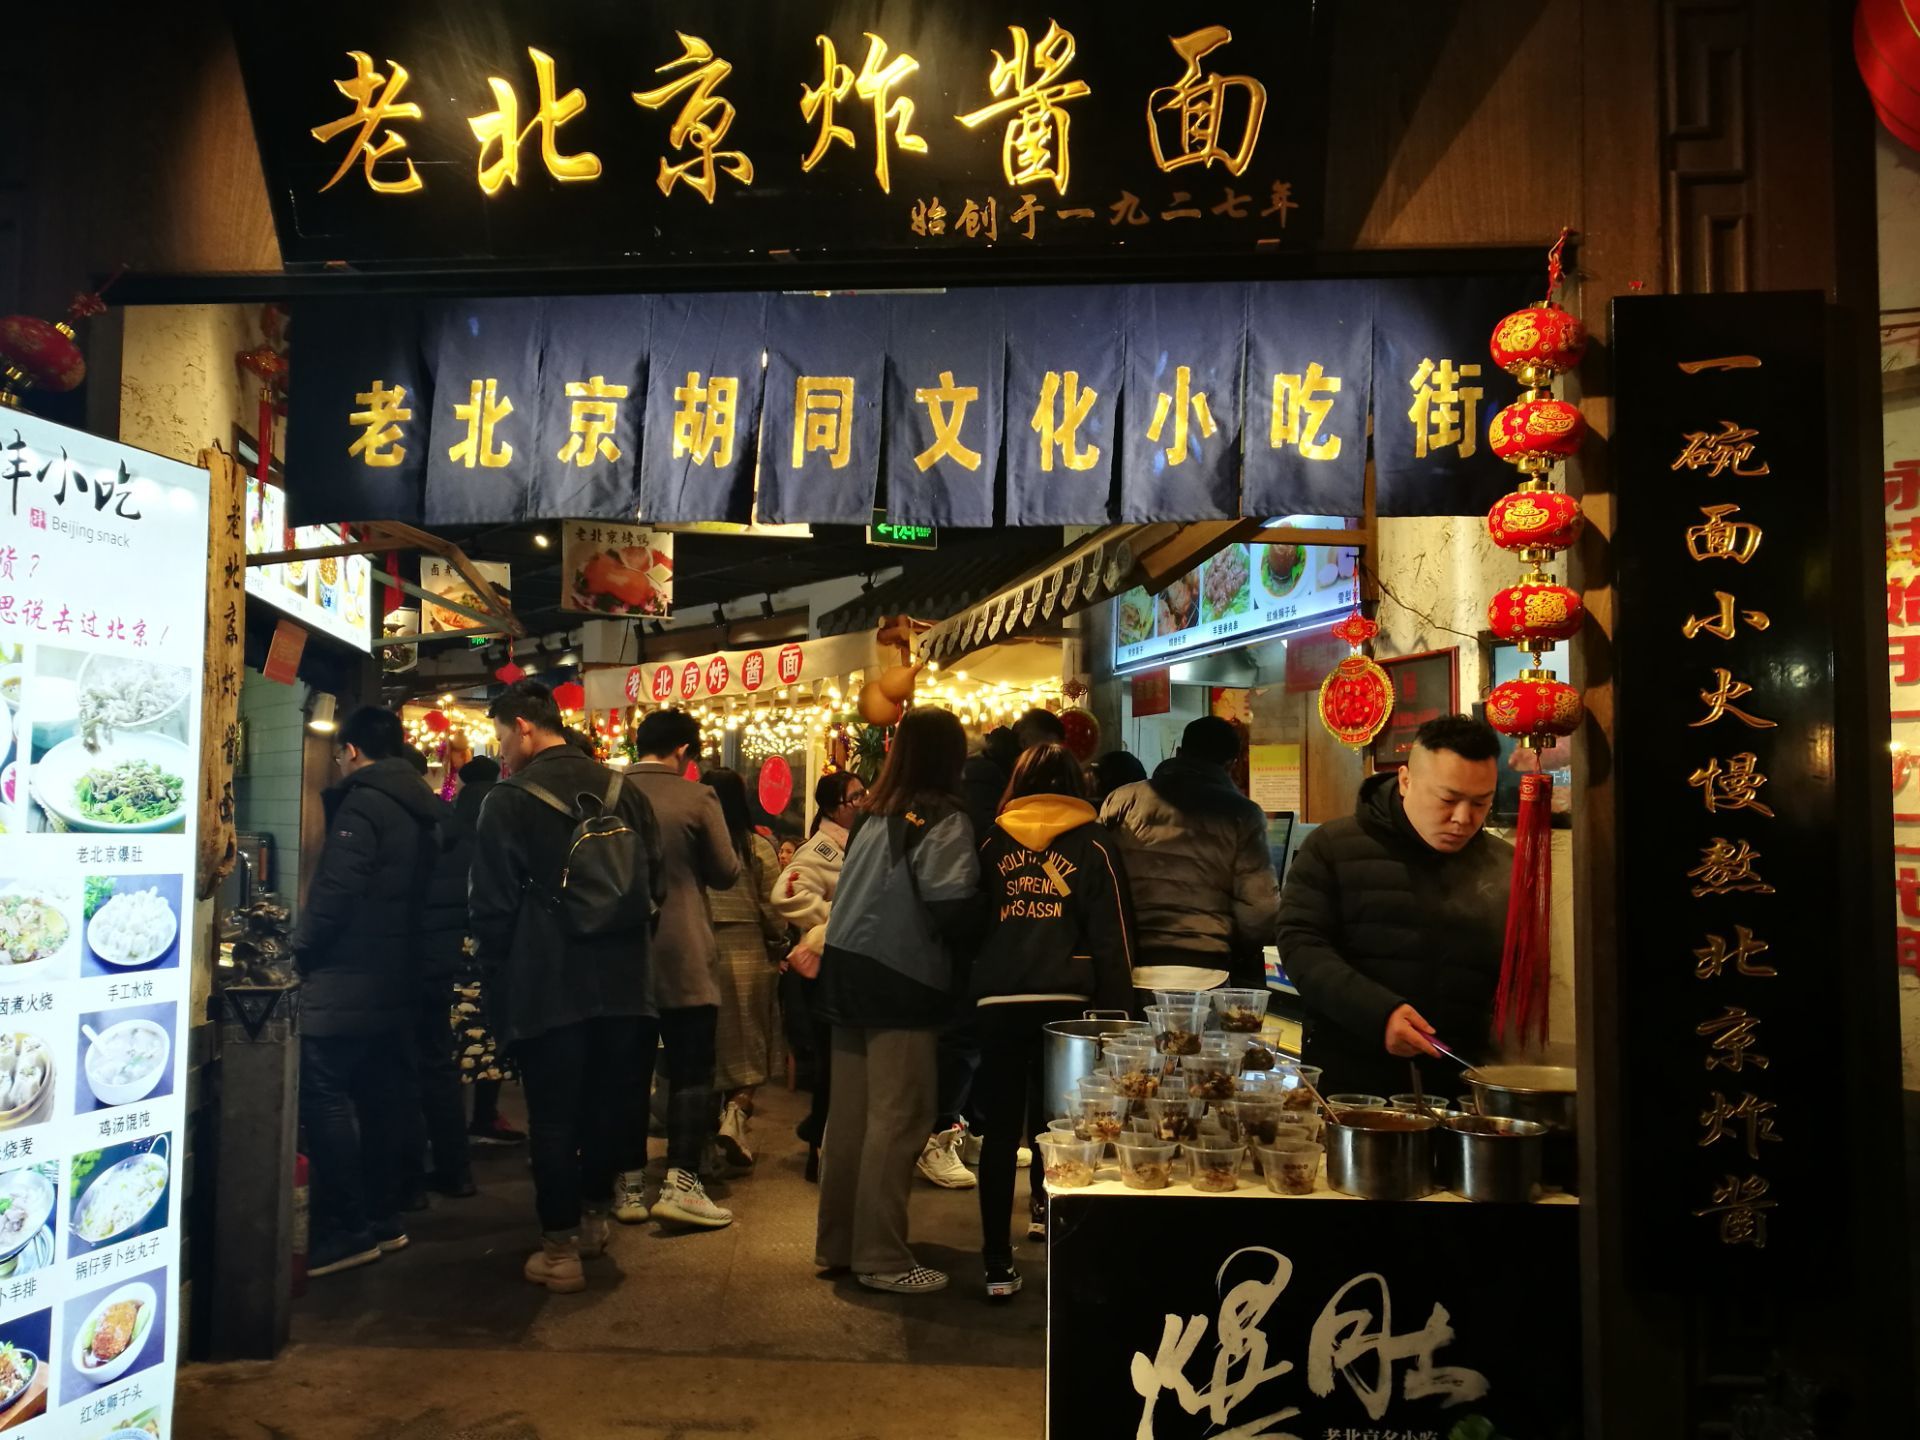 中國《北京》-消失中的老北京 南鑼鼓巷和文宇奶酪 - 言不及義的流浪癖 - udn部落格